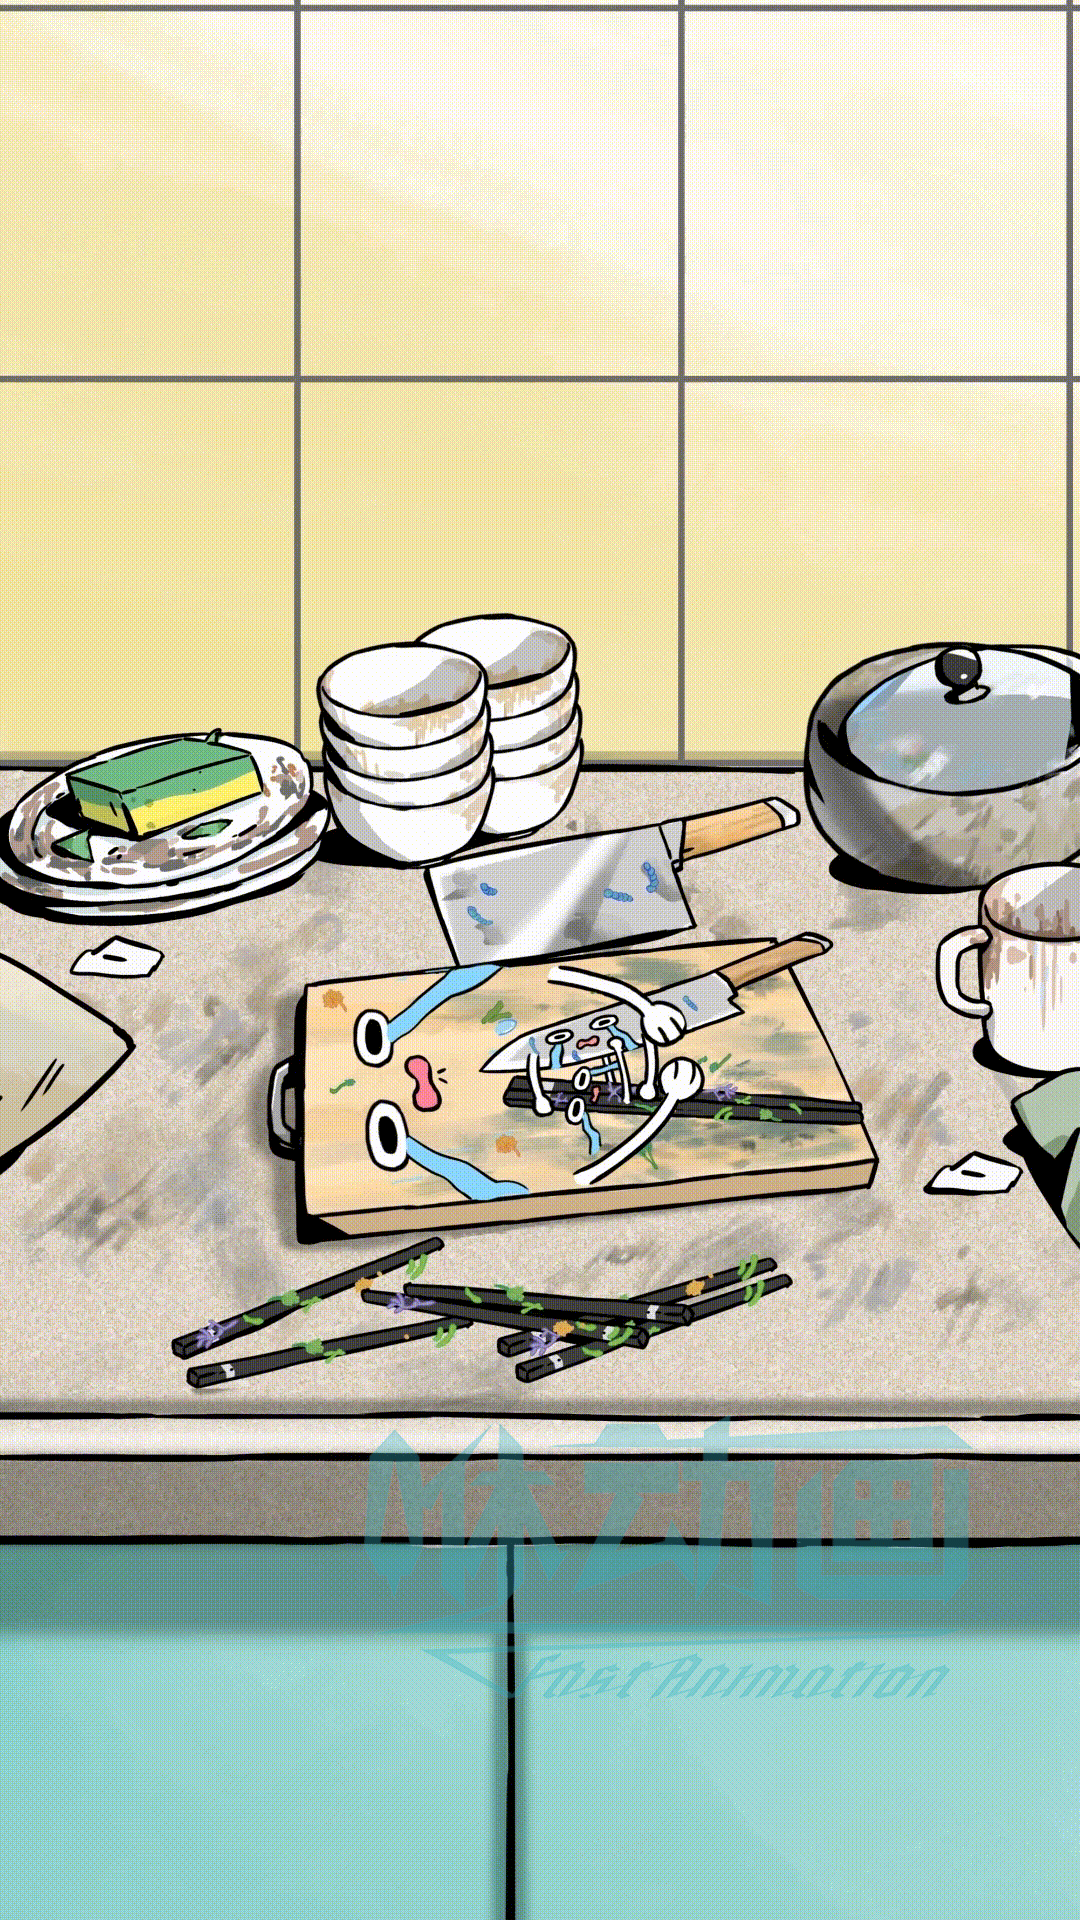 「咻动画」美的刀筷砧板除菌机产品动画短片（手绘风格MG动画）